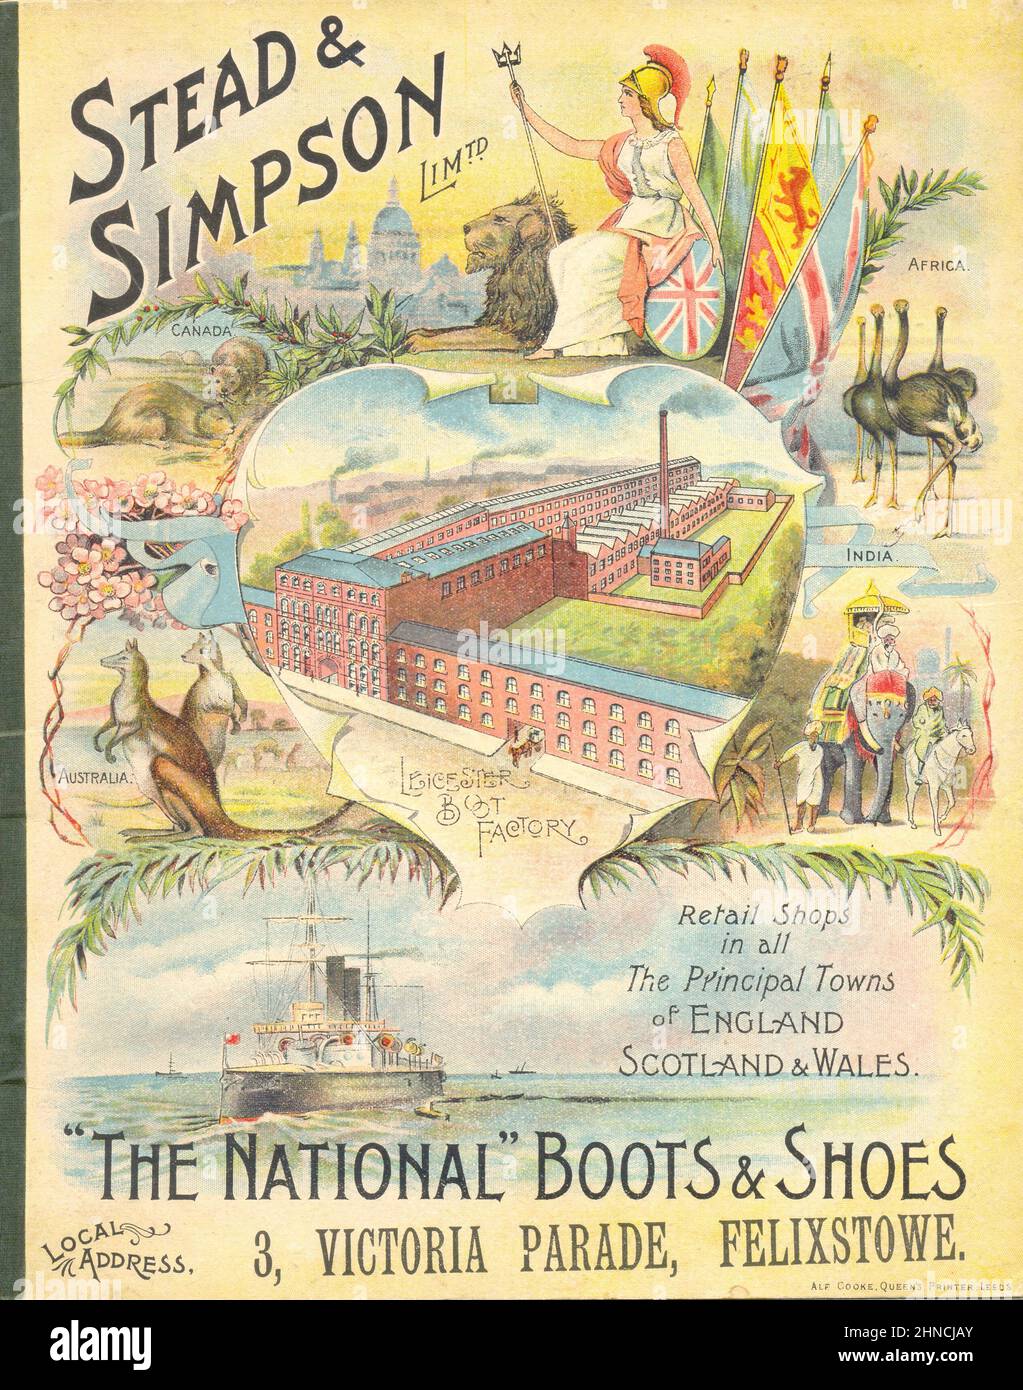 Copertina anteriore di pubblicità calendario blotter per Stead & Simpson Ltd., 'The National' Boots & Shoes, 3 Victoria Parade, Felixstowe, Suffolk 1904 Foto Stock